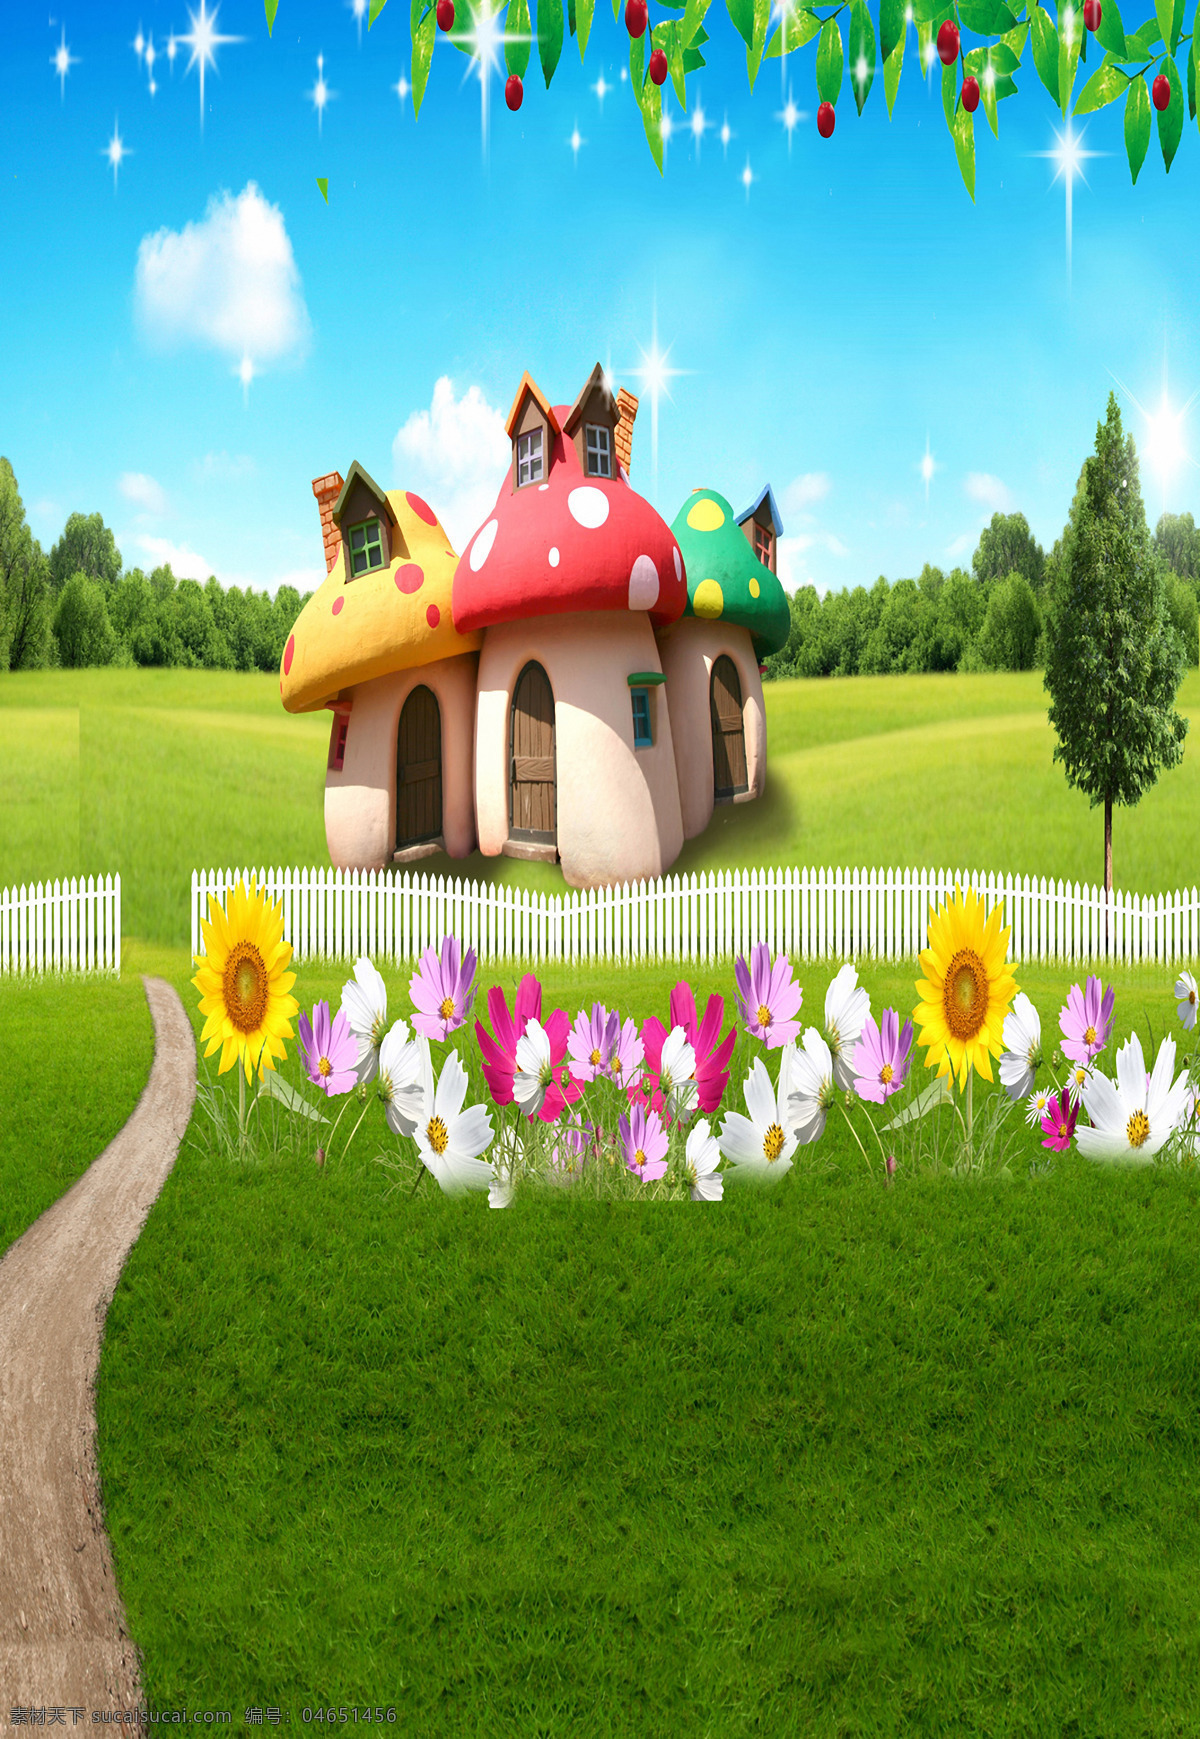 童话故事 童话 童话设计 童话小屋 草坪 花草 御锦华庭 环境设计 景观设计